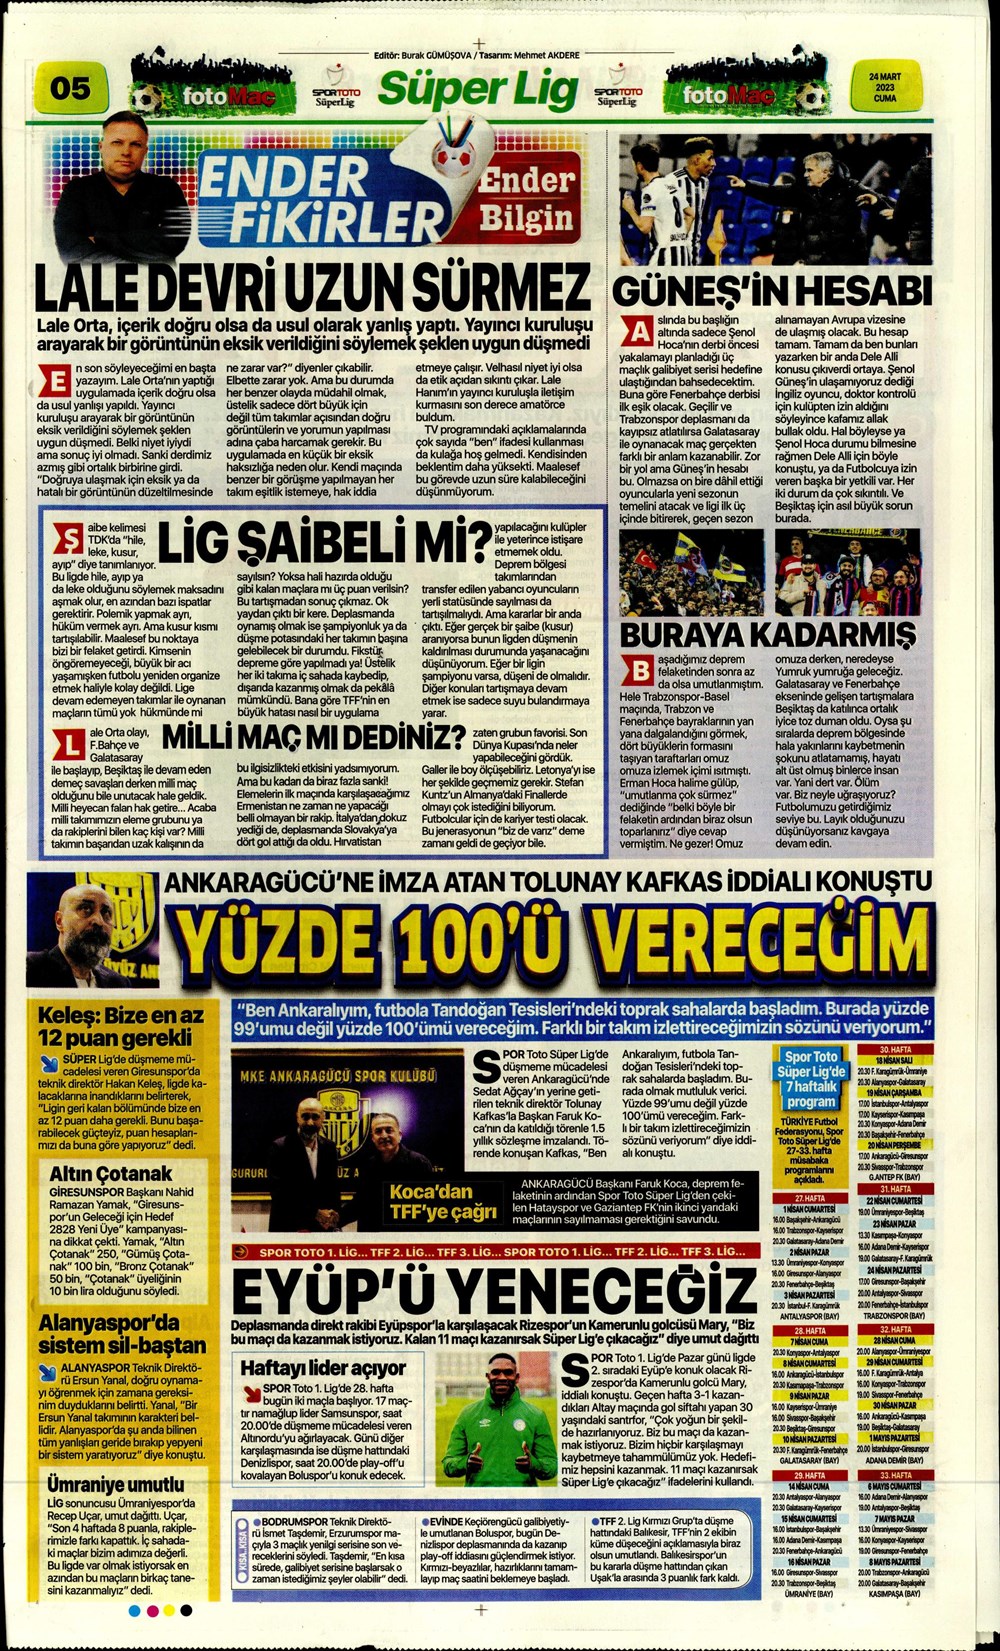 "Kuntz'dan son ayarlar" - Sporun manşetleri  - 15. Foto